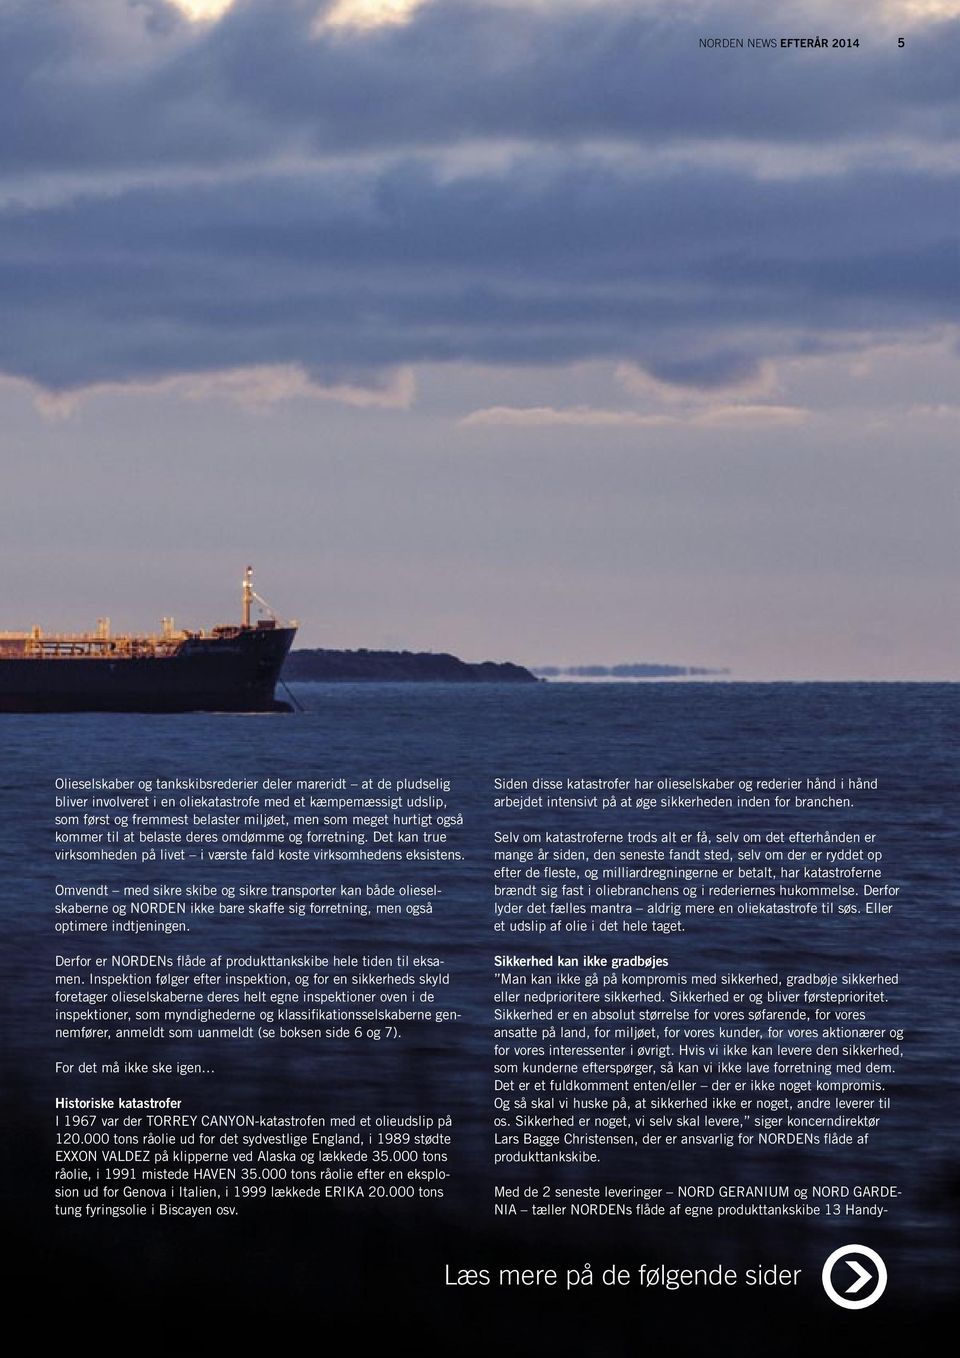 Omvendt med sikre skibe og sikre transporter kan både olieselskaberne og NORDEN ikke bare skaffe sig forretning, men også optimere indtjeningen.